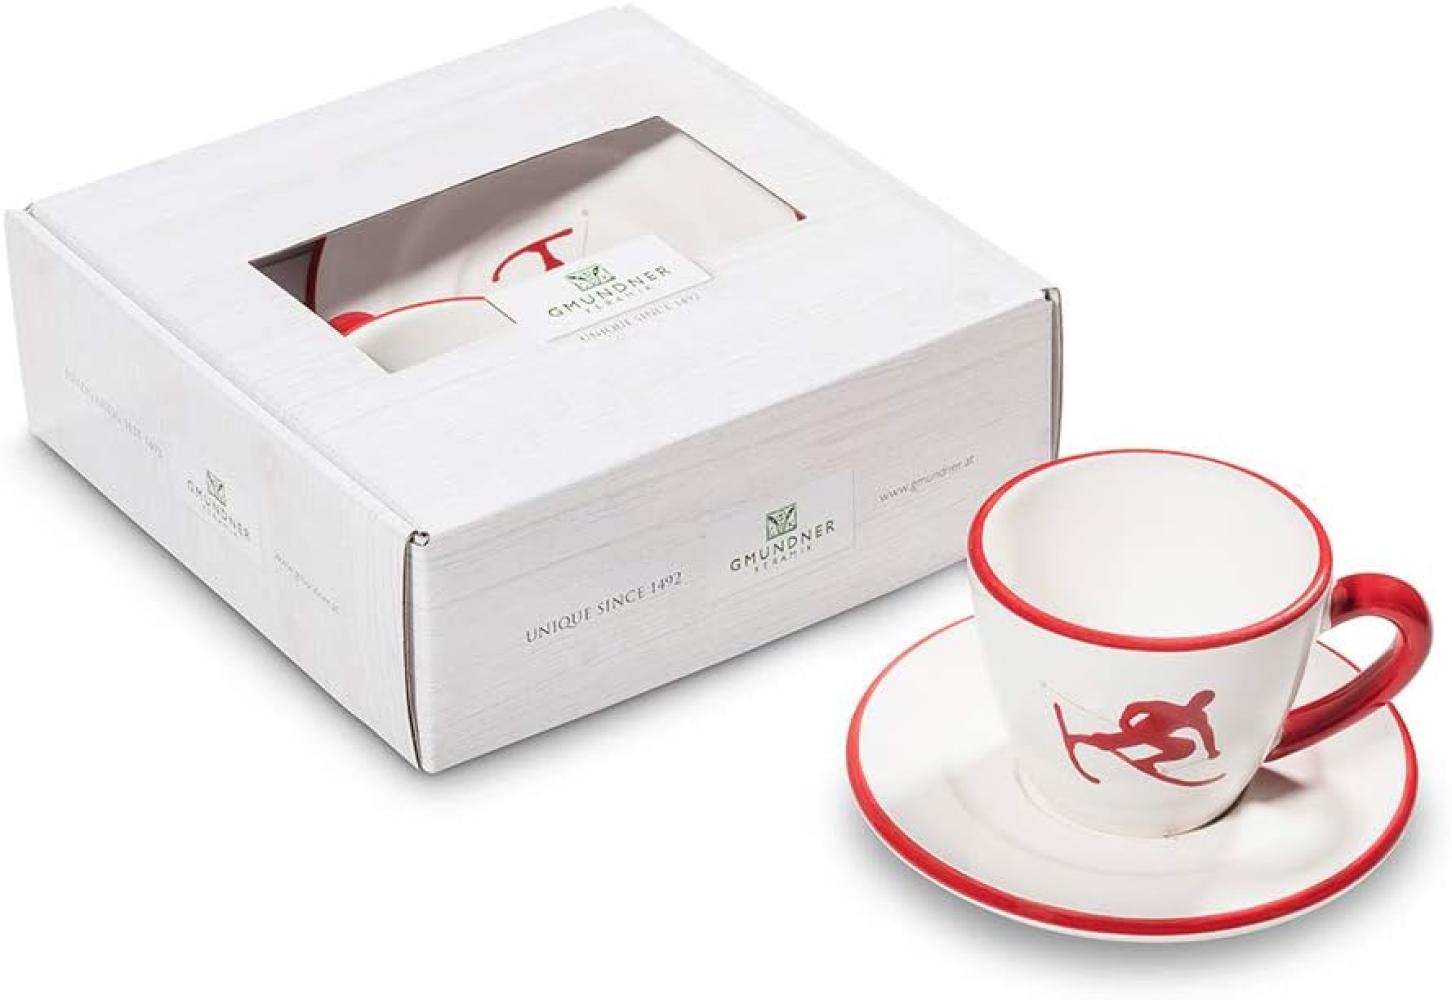 Rubinroter Toni, Espresso für Dich Gourmet - Gmundner Keramik Espressotasse - Mikrowelle geeignet, Spülmaschinenfest Bild 1